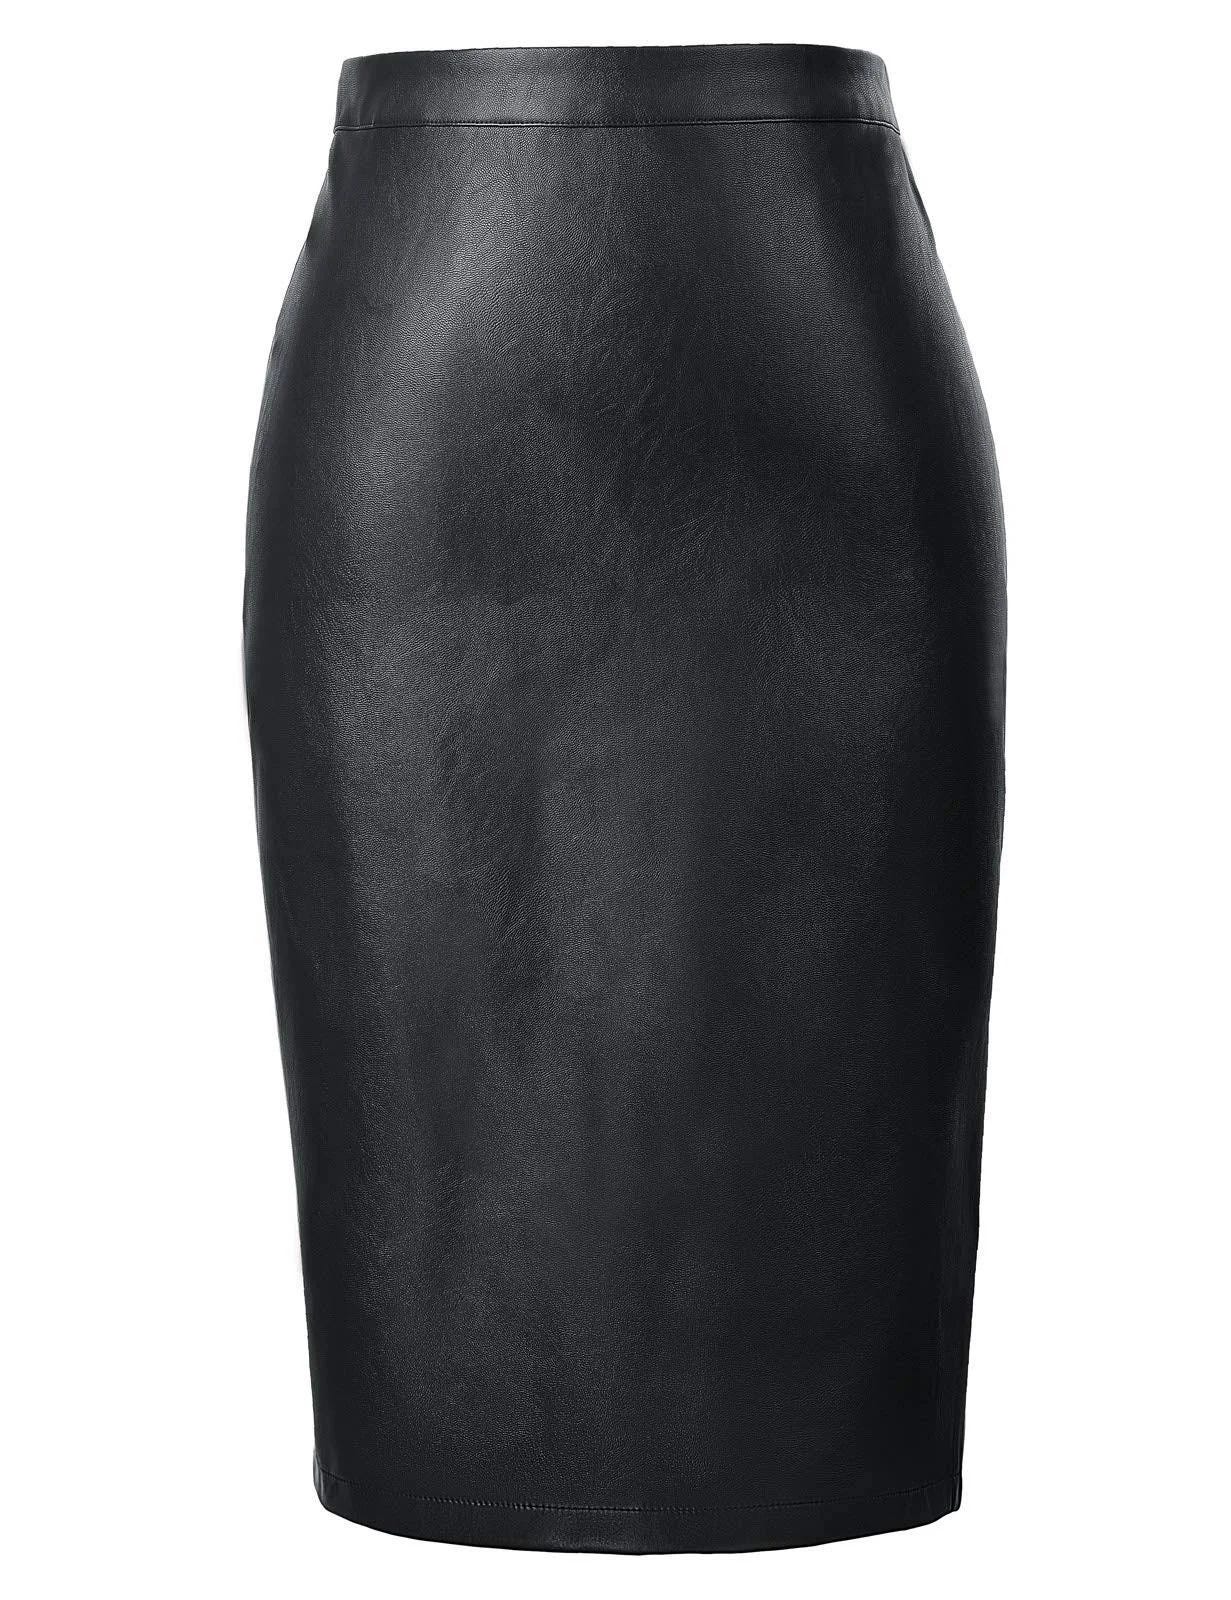 Elegant High Waist Bodycon Skirt with Back Split | Image